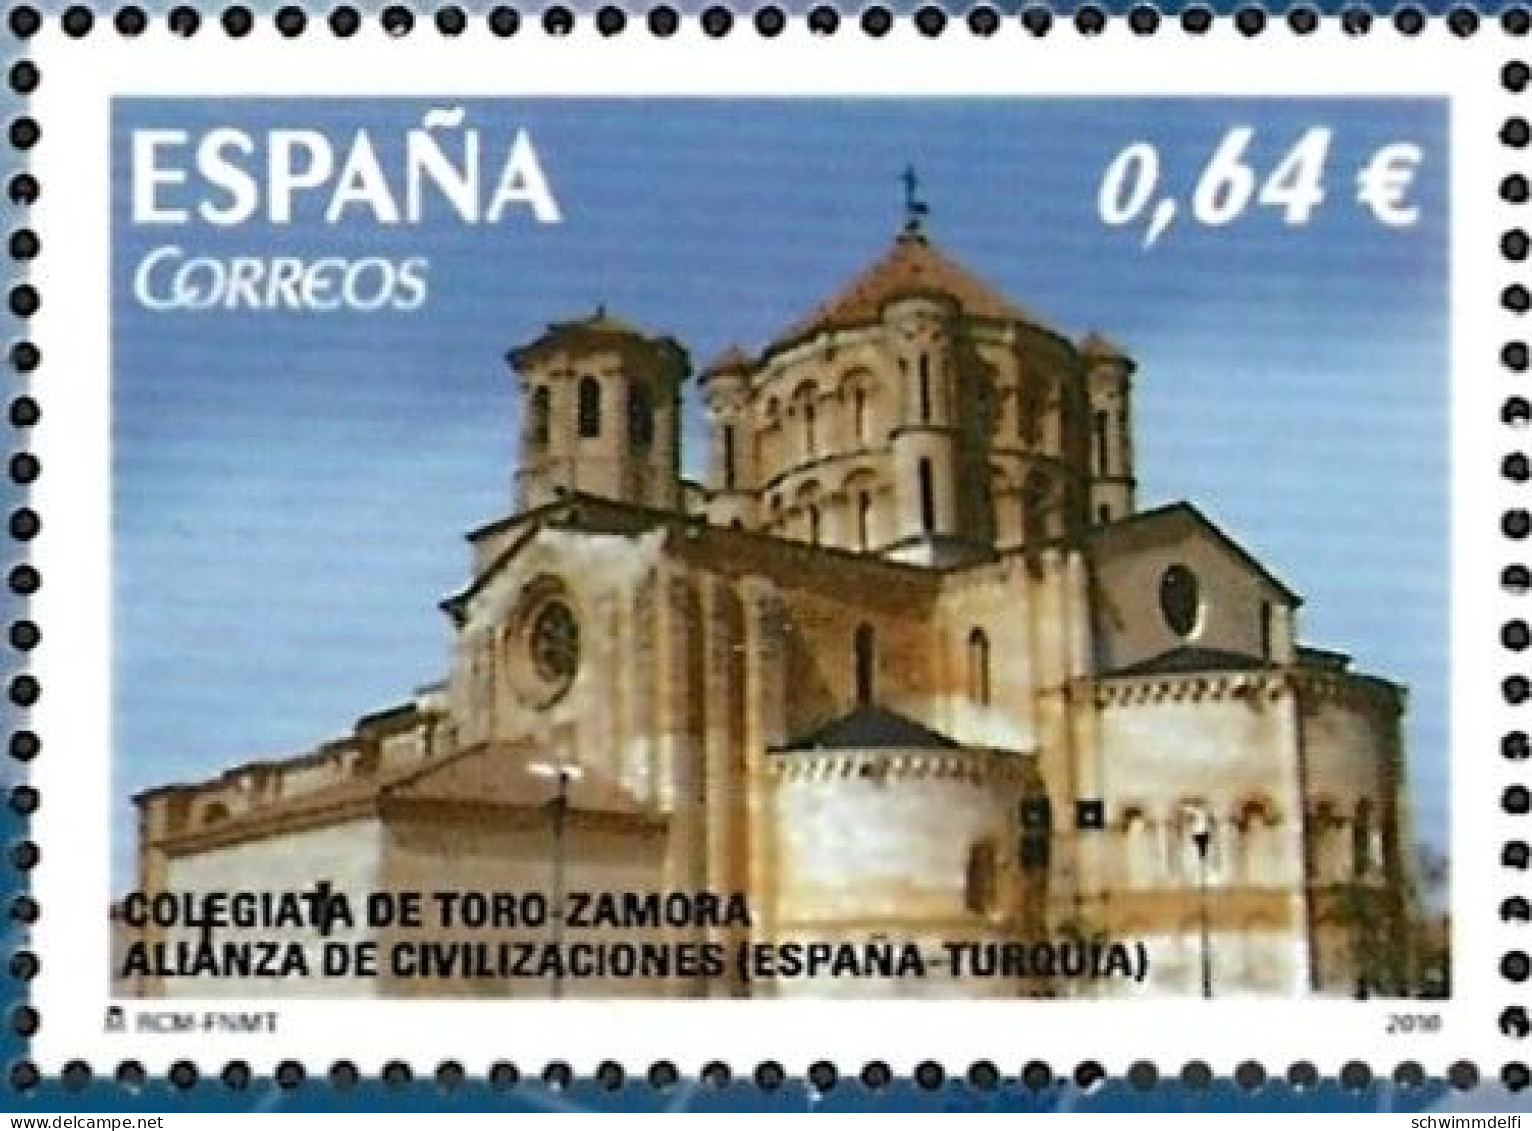 SPANIEN - ESPAÑA - 2010 - GEMEINSCHAFTSAUSGABE - TUERKEI - SPANIEN - EMISIÓN CONJUNTO TURQUÍA - ESPAÑA - MNH - Blocs & Feuillets